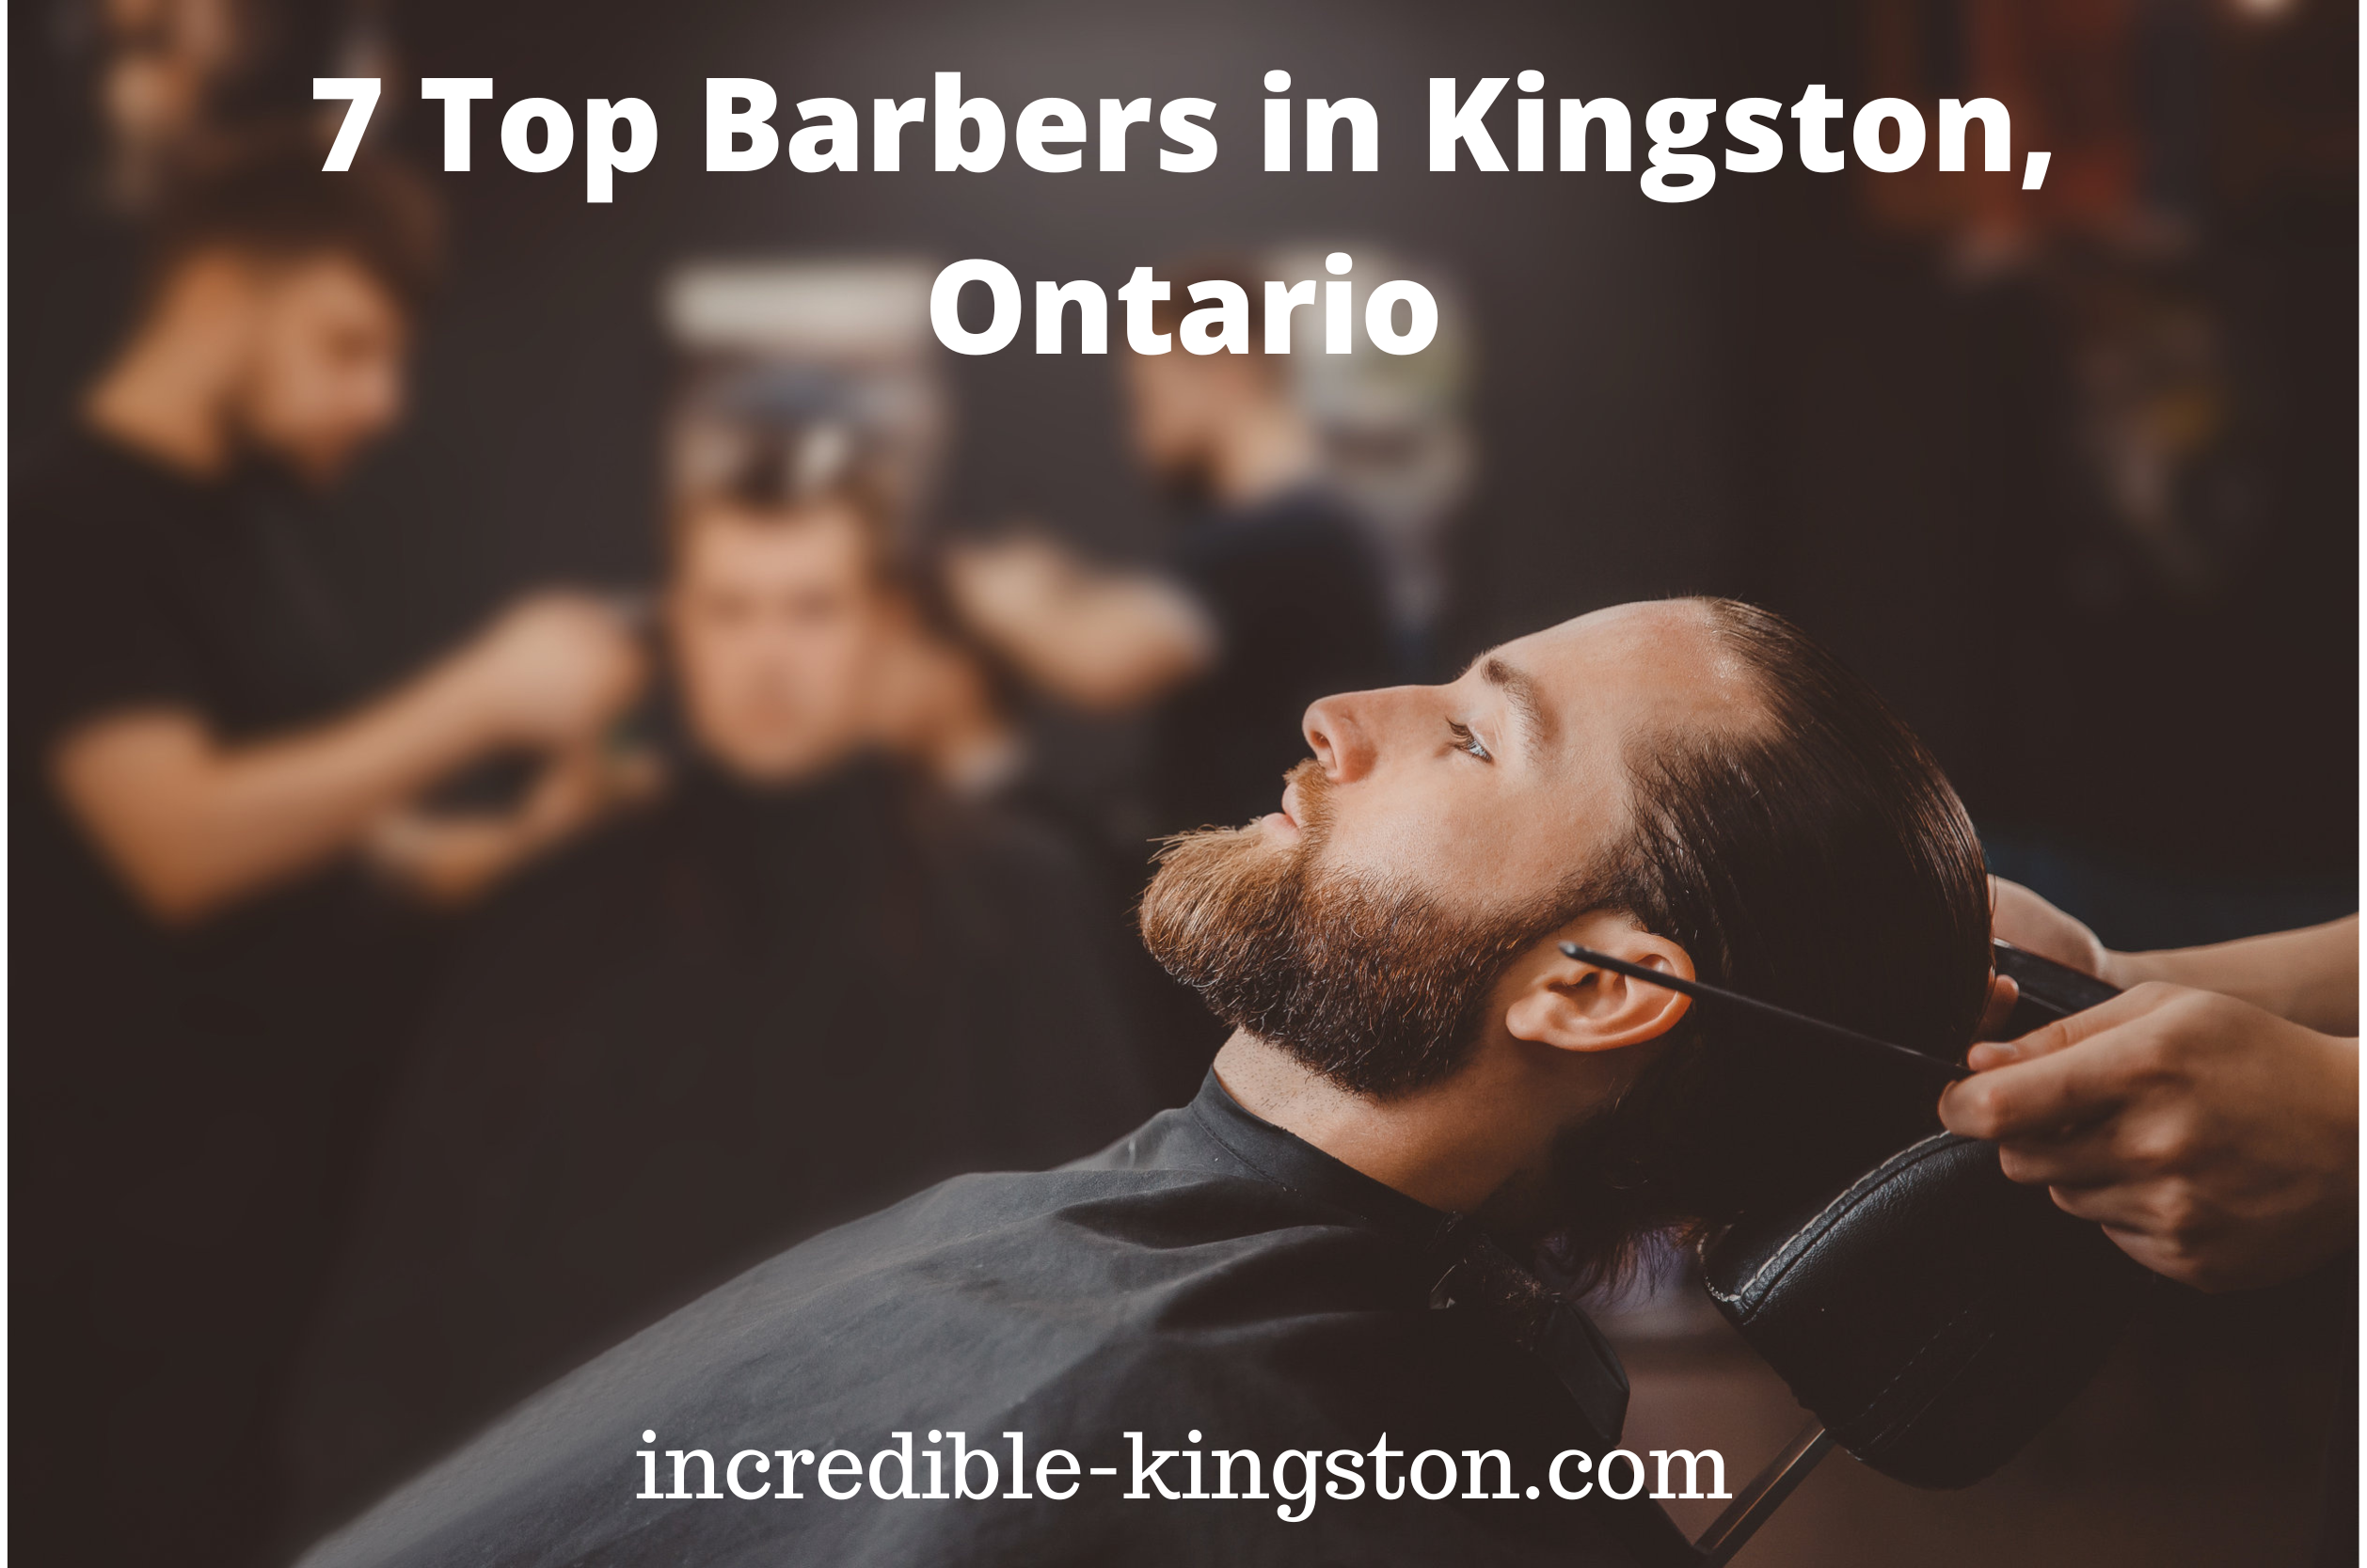 barber shops in Kingston, Ontario